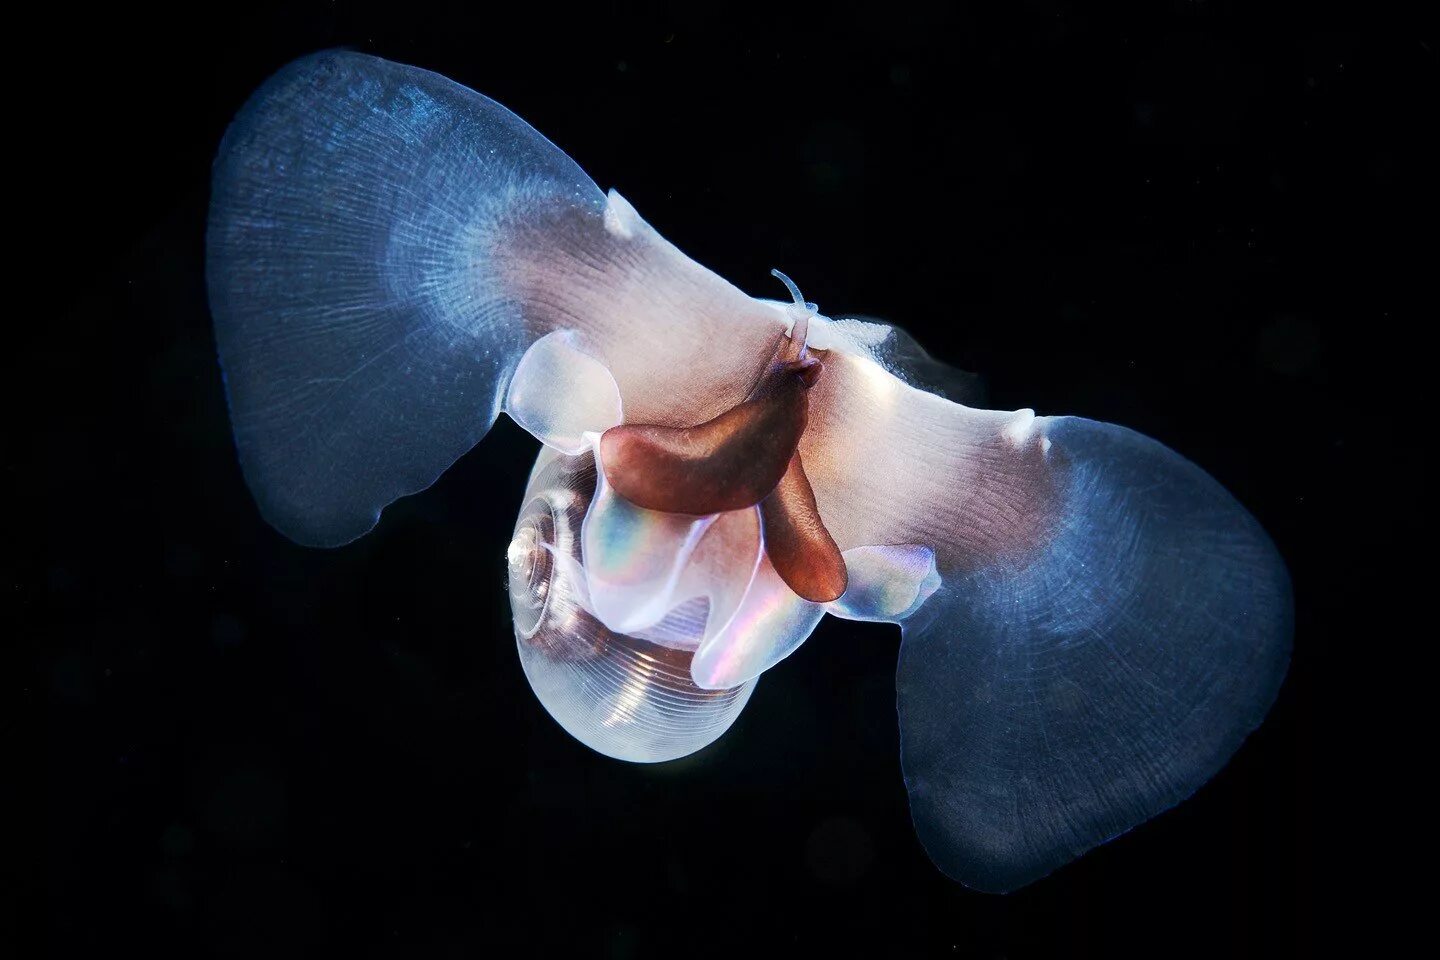 Морской ангел крылоногий моллюск. Крылоногий моллюск, лимацина (limacina helicina). Моллюск морской черт лимацин. Клион морской ангел. Улитка бабочка